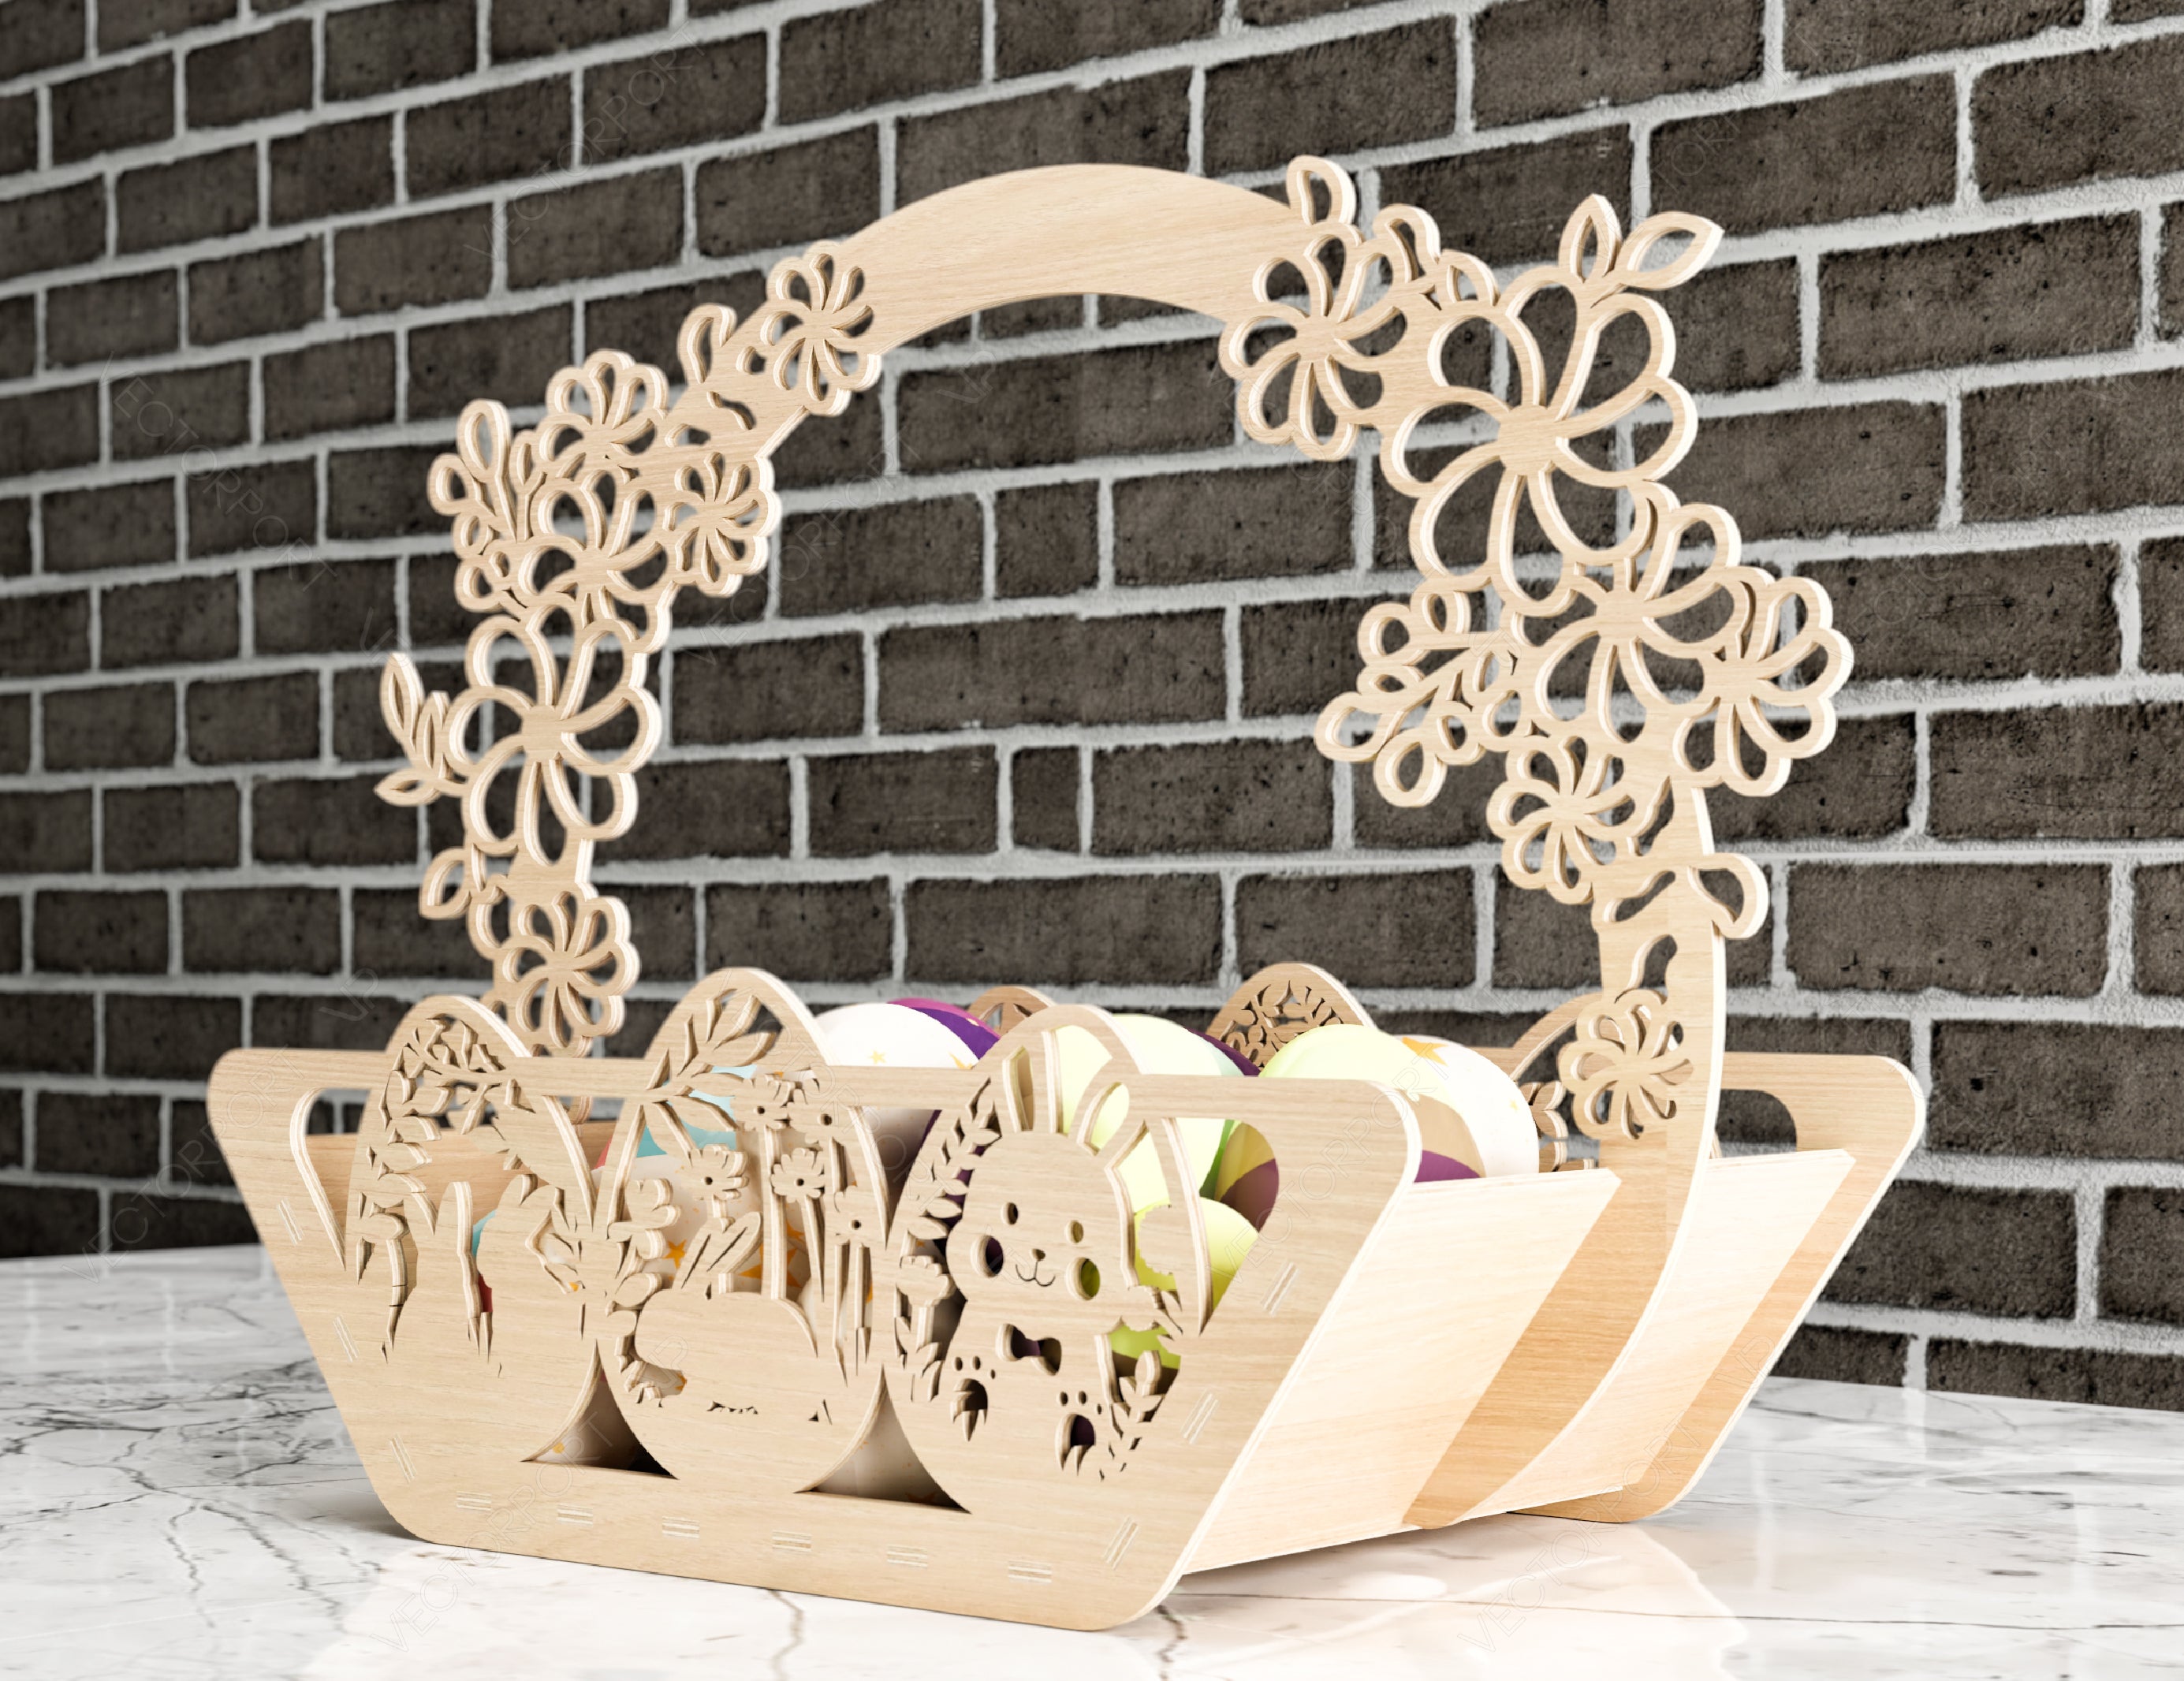 Decorative Laser Cut Wooden Easter Basket Laser cut Egg Bowl SVG files cnc template laser cut Digital Download |#U201|